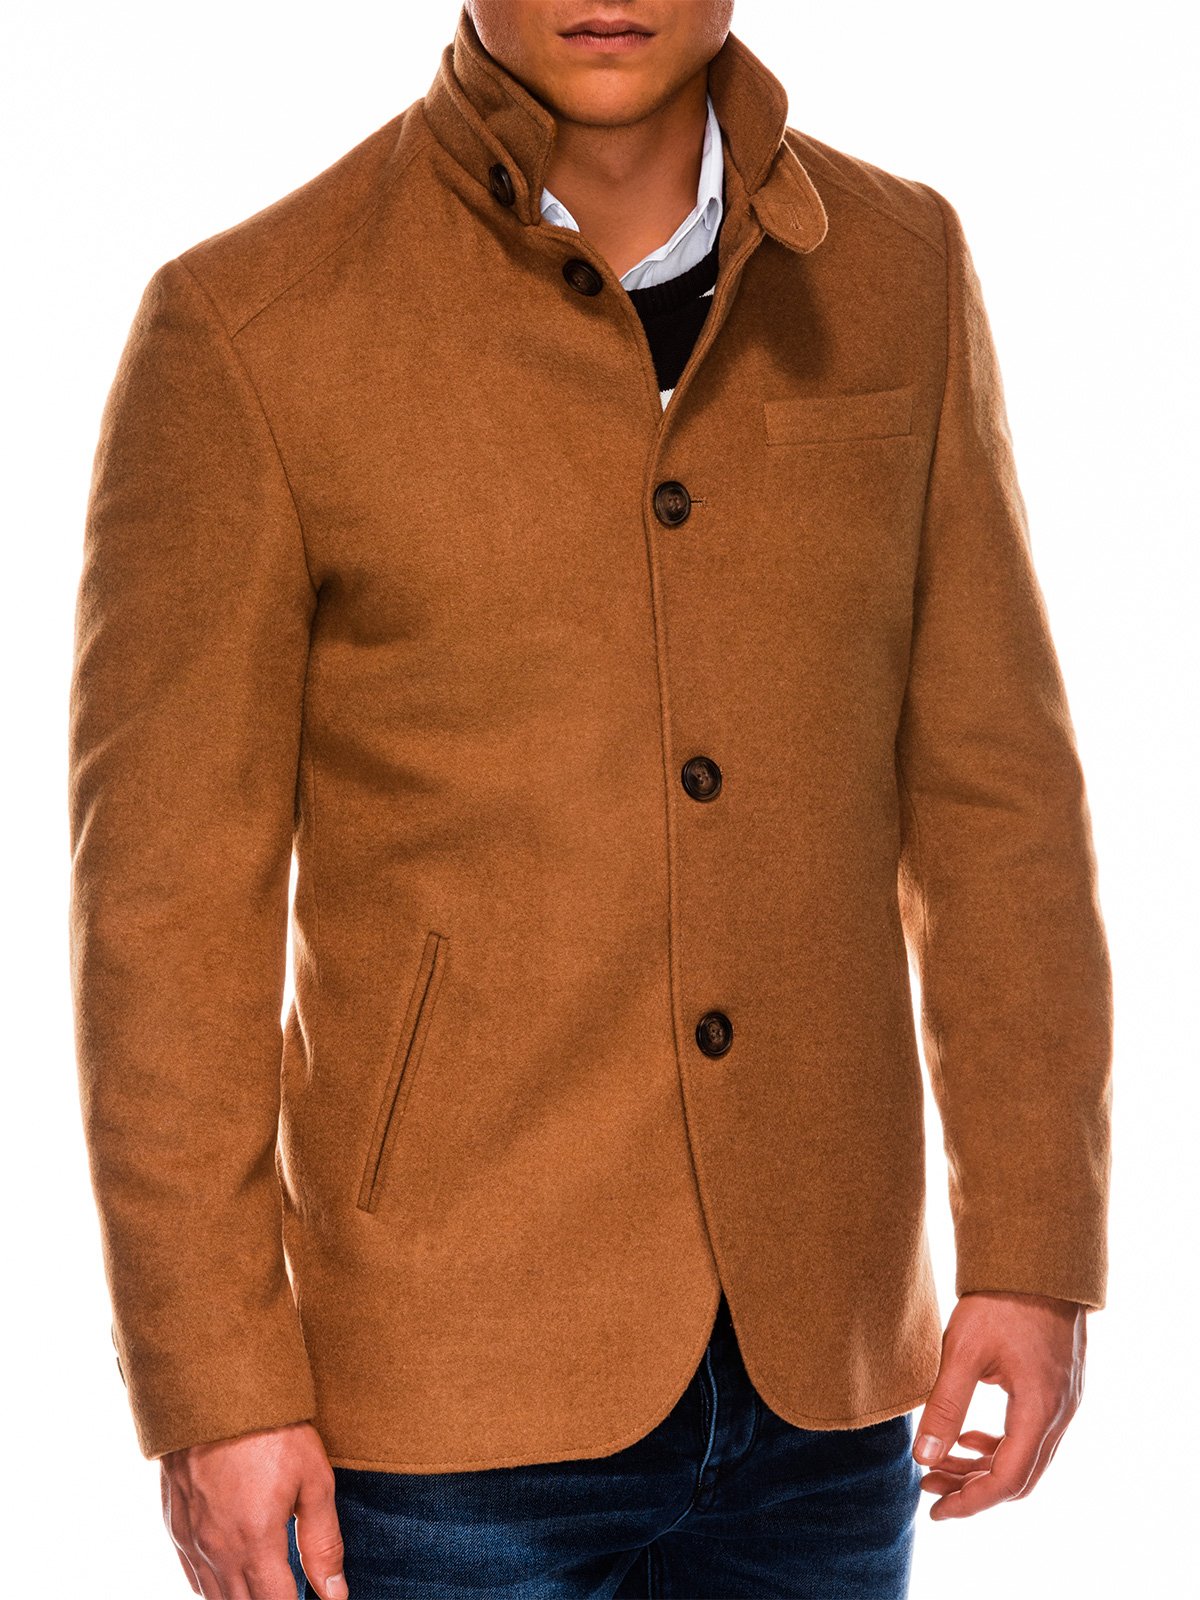 Men's autumn coat C427 camel MODONE wholesale Clothing For Men